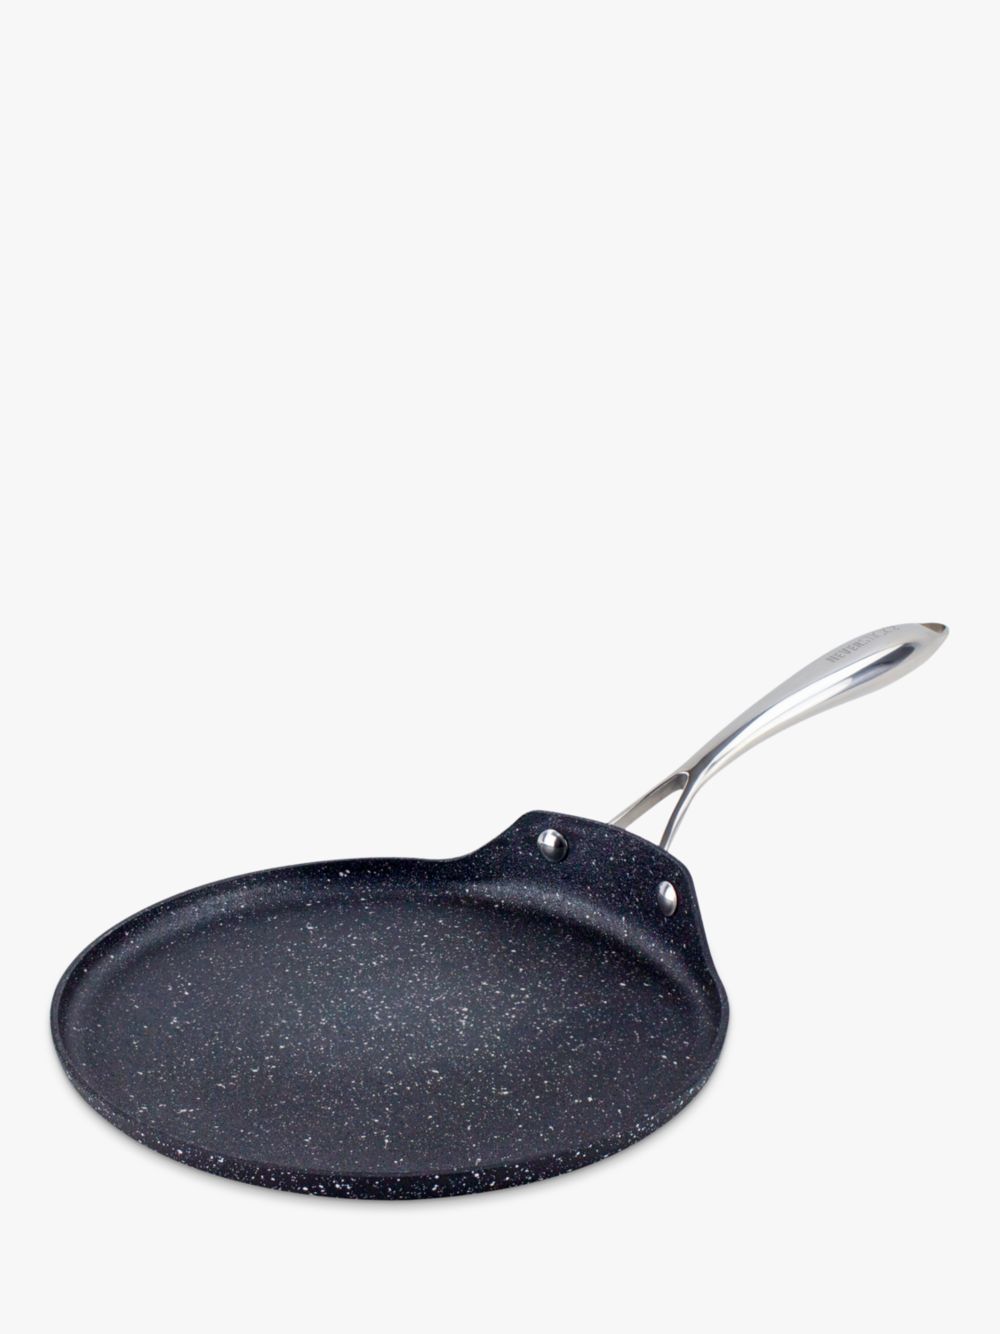 Алюминиевая сковорода для блинов с антипригарным покрытием Eaziglide Neverstick2, 25 см, черная сковорода с антипригарным покрытием eaziglide neverstick 20 см